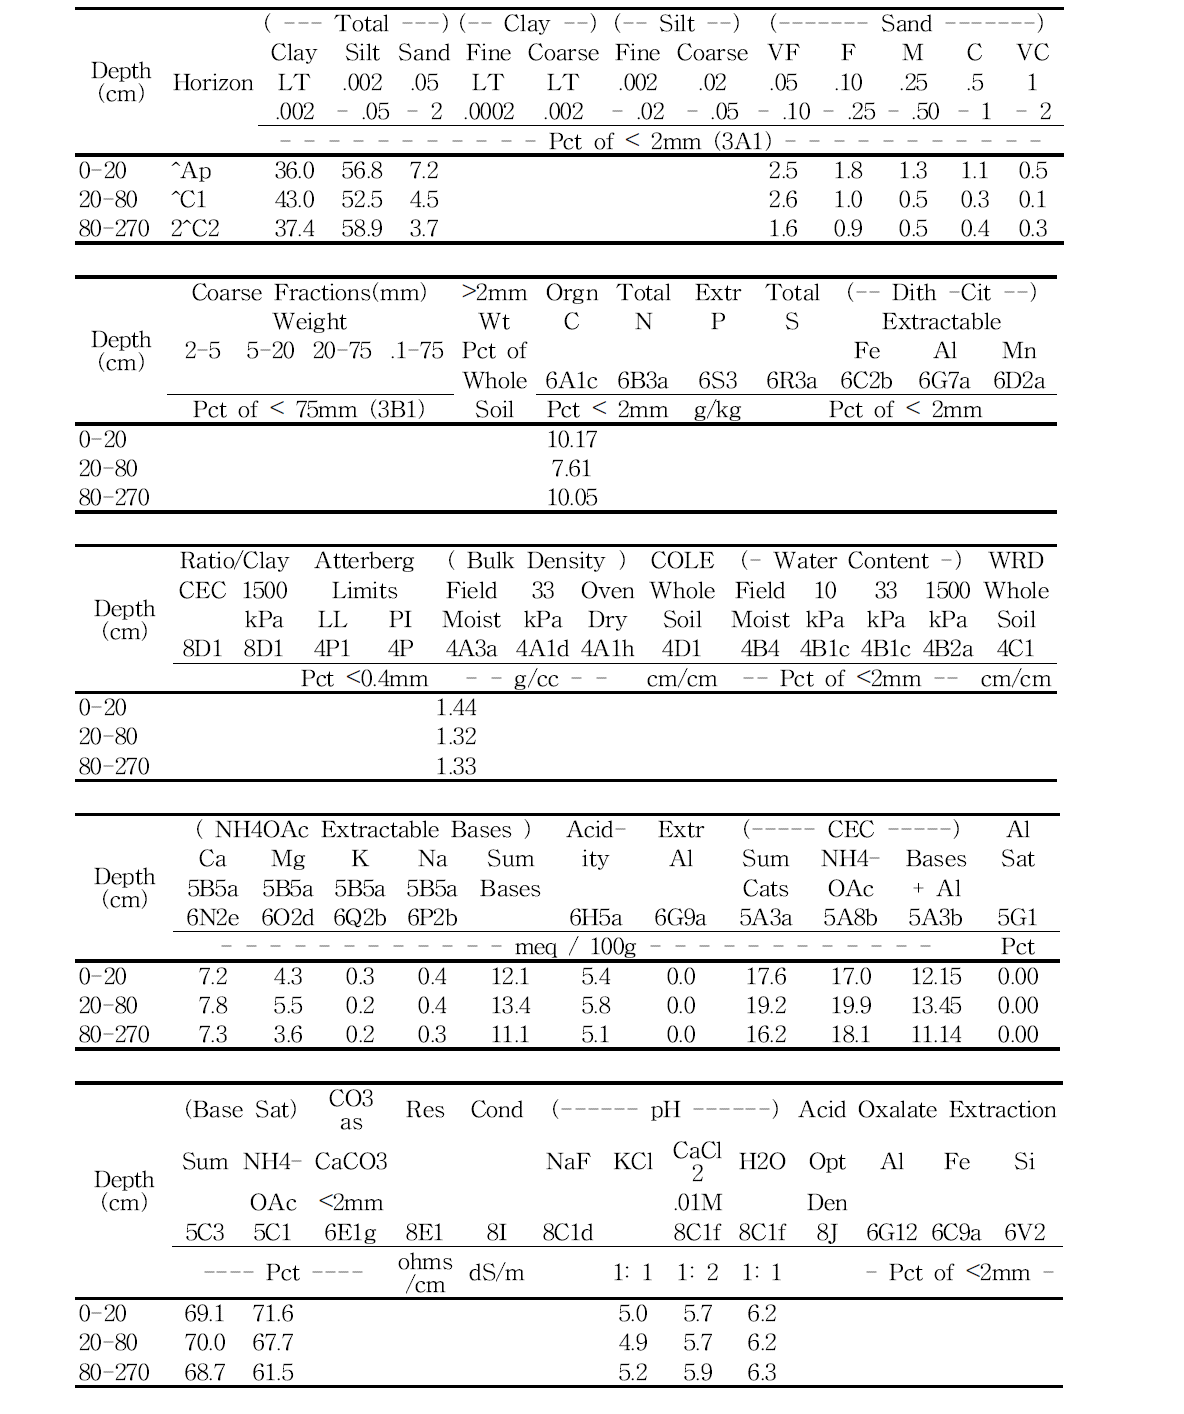 Laboratory data sheets of Inchang series.